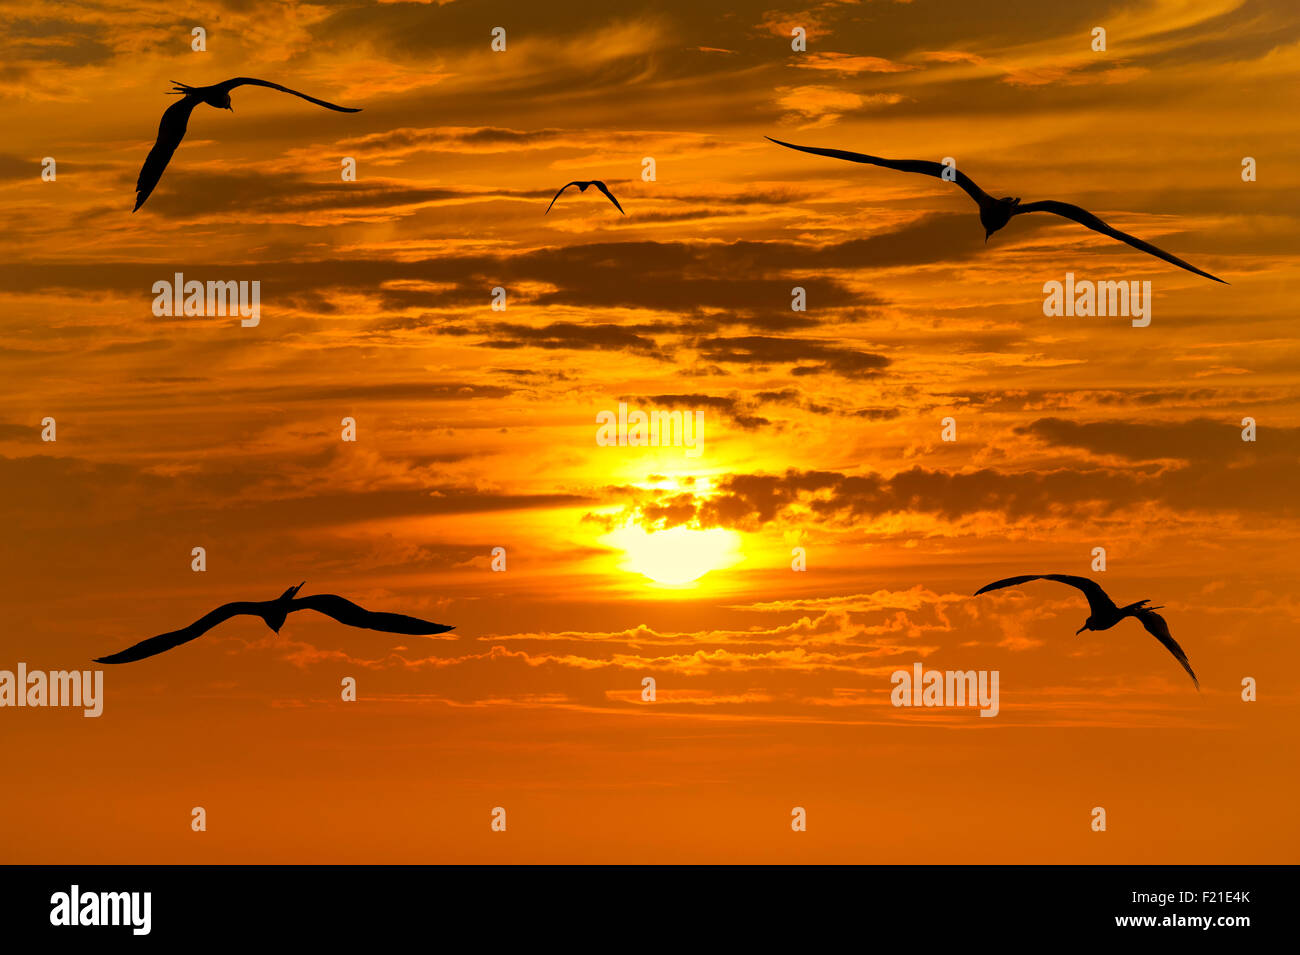 Silhouette oiseaux voler est un petit troupeau d'oiseaux volant découpé sur un magnifique coucher de soleil orange et cloudscape. Banque D'Images